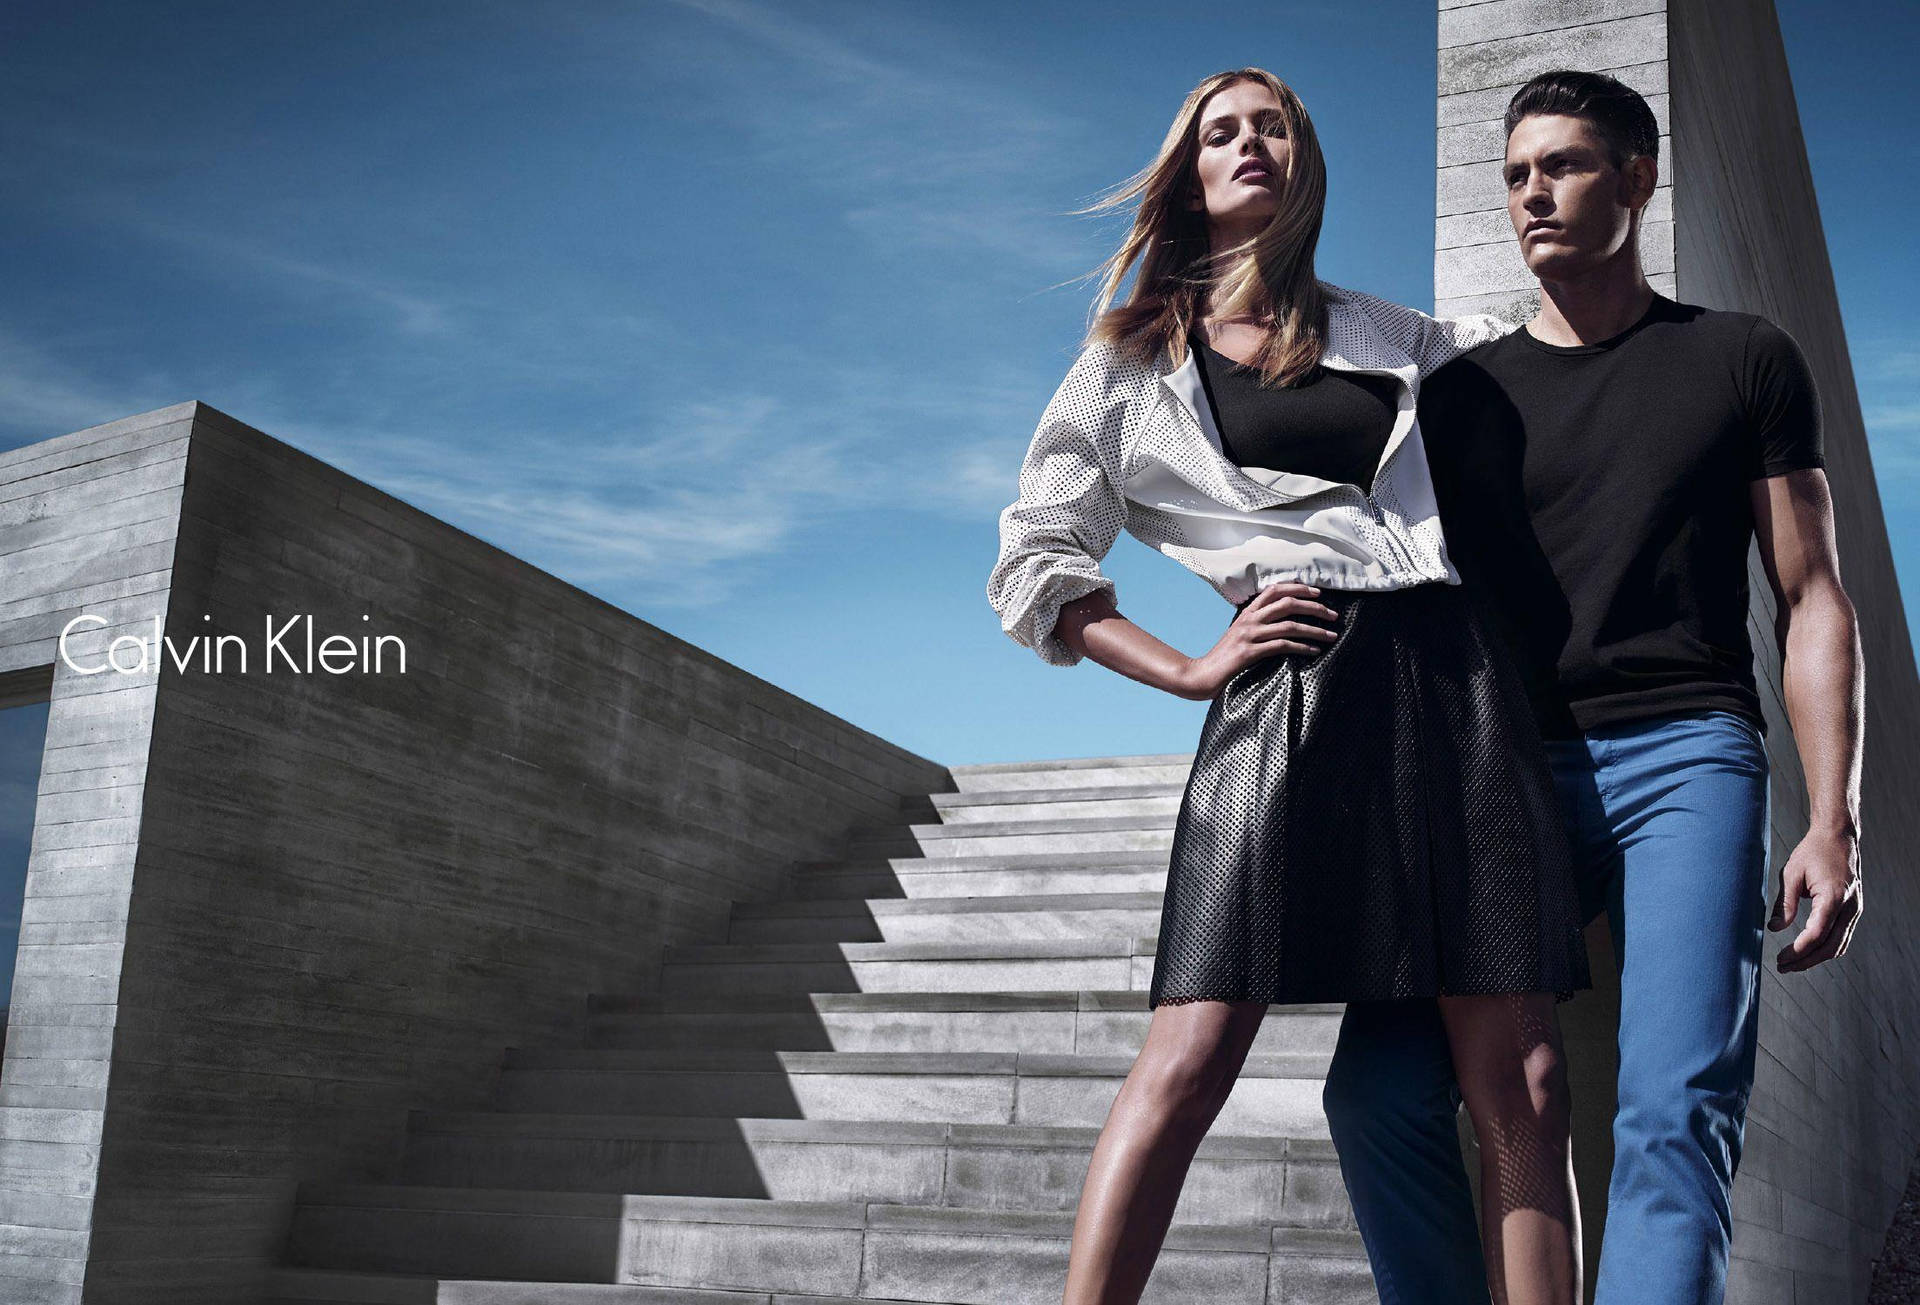 Anúncioda Calvin Klein. Papel de Parede